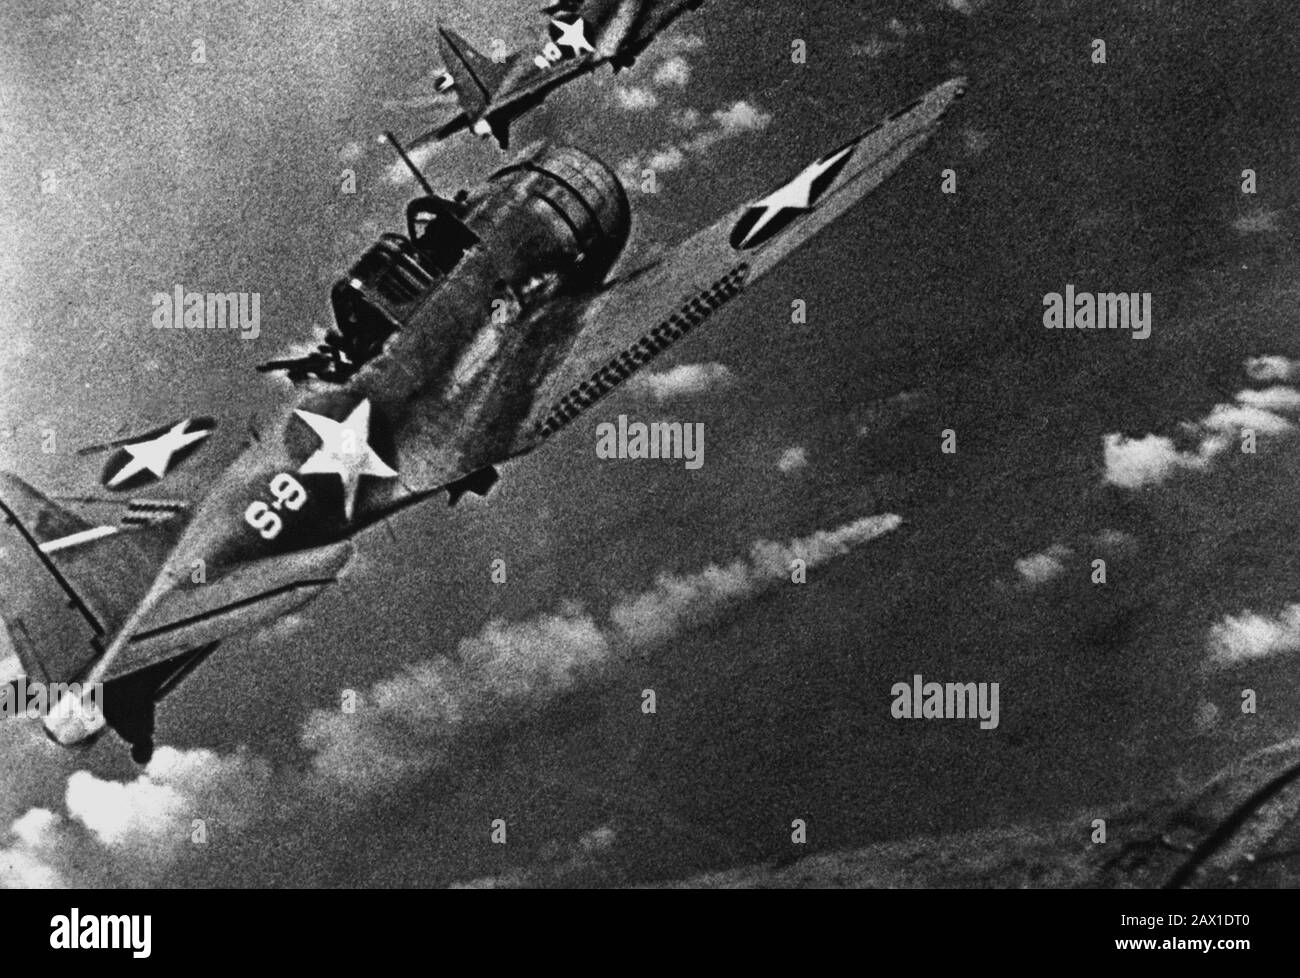 1942 , 6 DE JUNIO , EE.UU. : BATALLA INTERMEDIA . Combatientes de la Marina durante el ataque a la flota japonesa frente a Midway, del 4 al 6 de junio de 1942. En el centro es visible un buque japonés en llamas. (Marina) Navy Douglas SBD-3 bombarderos de buceo "sin sentido" de la escuadrilla VS-8 del portaaviones USS Hornet (CV-8) que se acercan al crucero pesado japonés en llamas MIKUMA para hacer el tercer grupo de ataques contra ella, durante la Batalla de Midway, 6 de junio de 1942. Mikuma había sido golpeado anteriormente por huelgas de Hornet y USS Enterprise (CV-6), dejándola muerta en el agua y fatalmente dañada. Nota bombas colgadas debajo de t Foto de stock